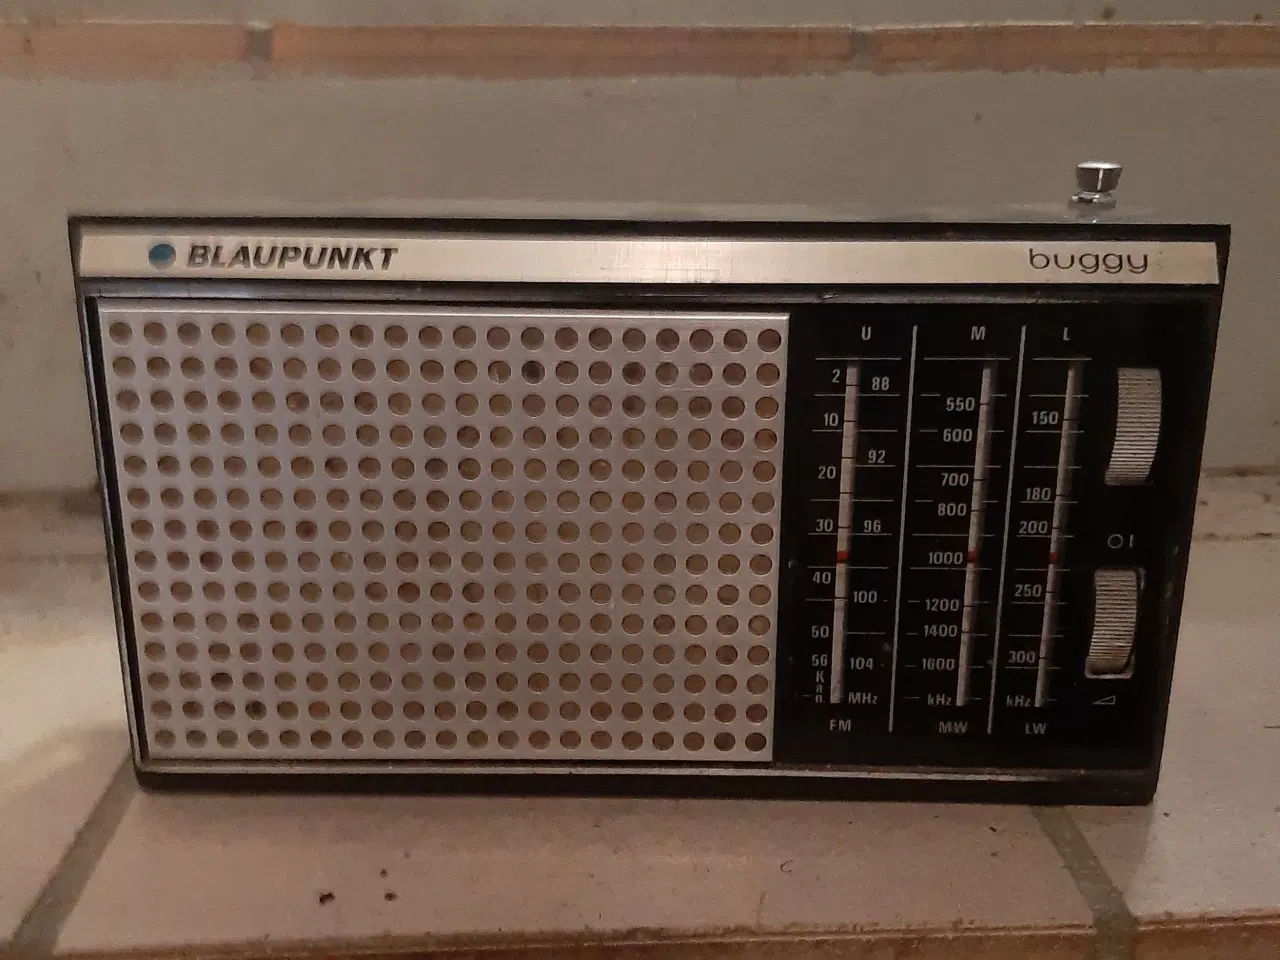 Billede 1 - Blaupunkt buggy radio (retro)